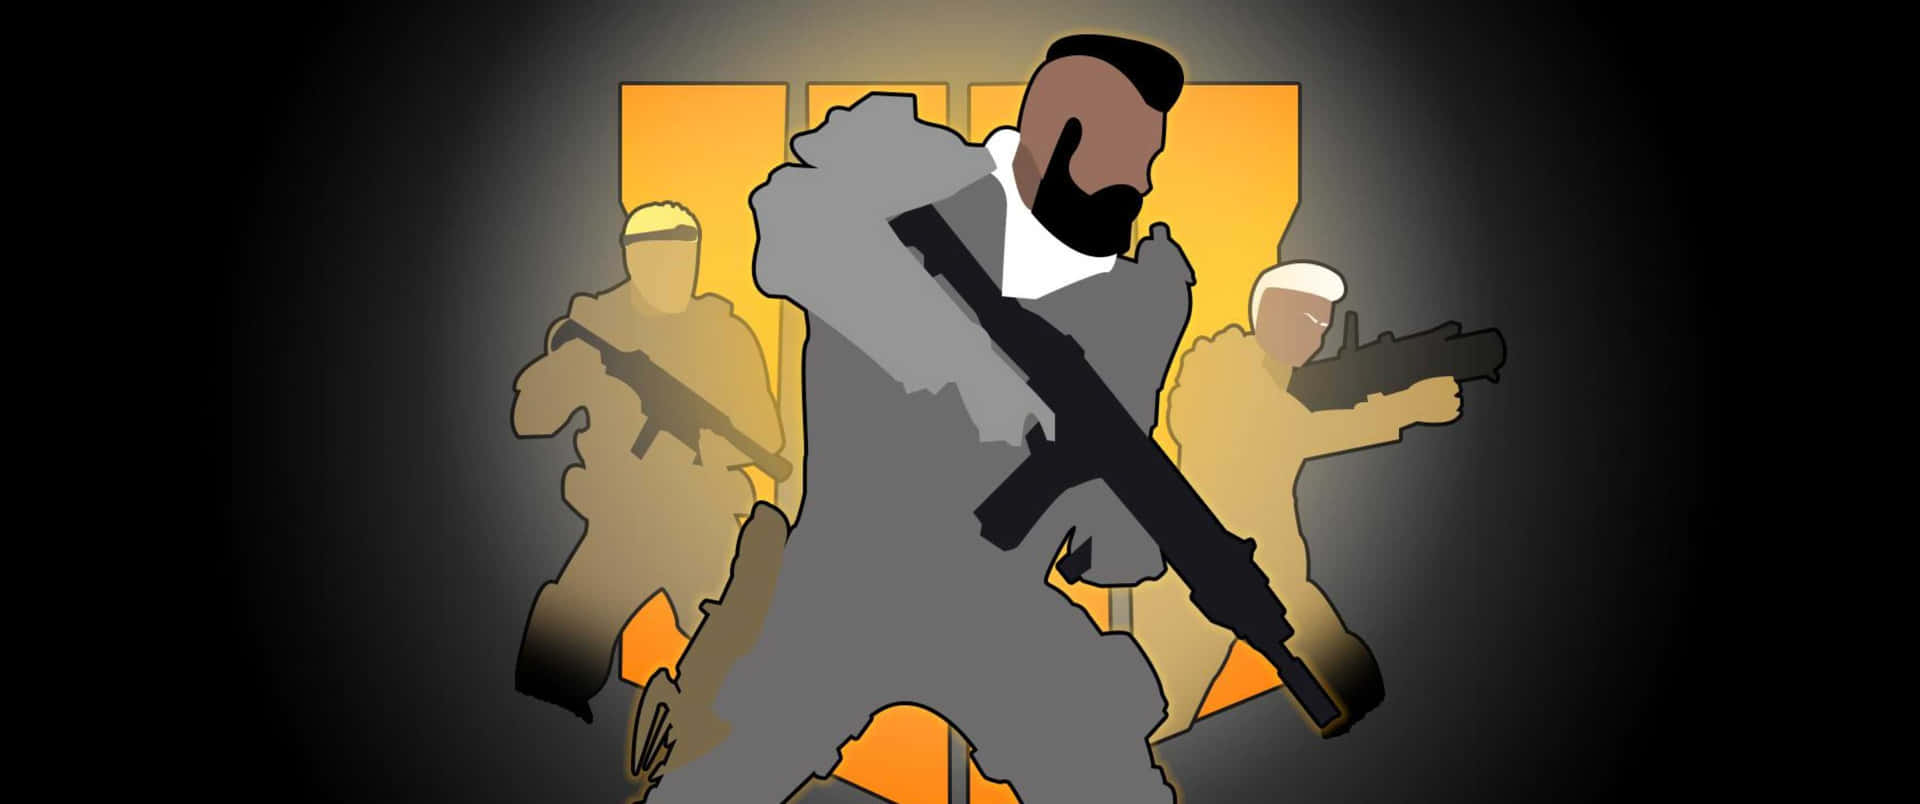 A Cartoon Of A Man Holding A Gun